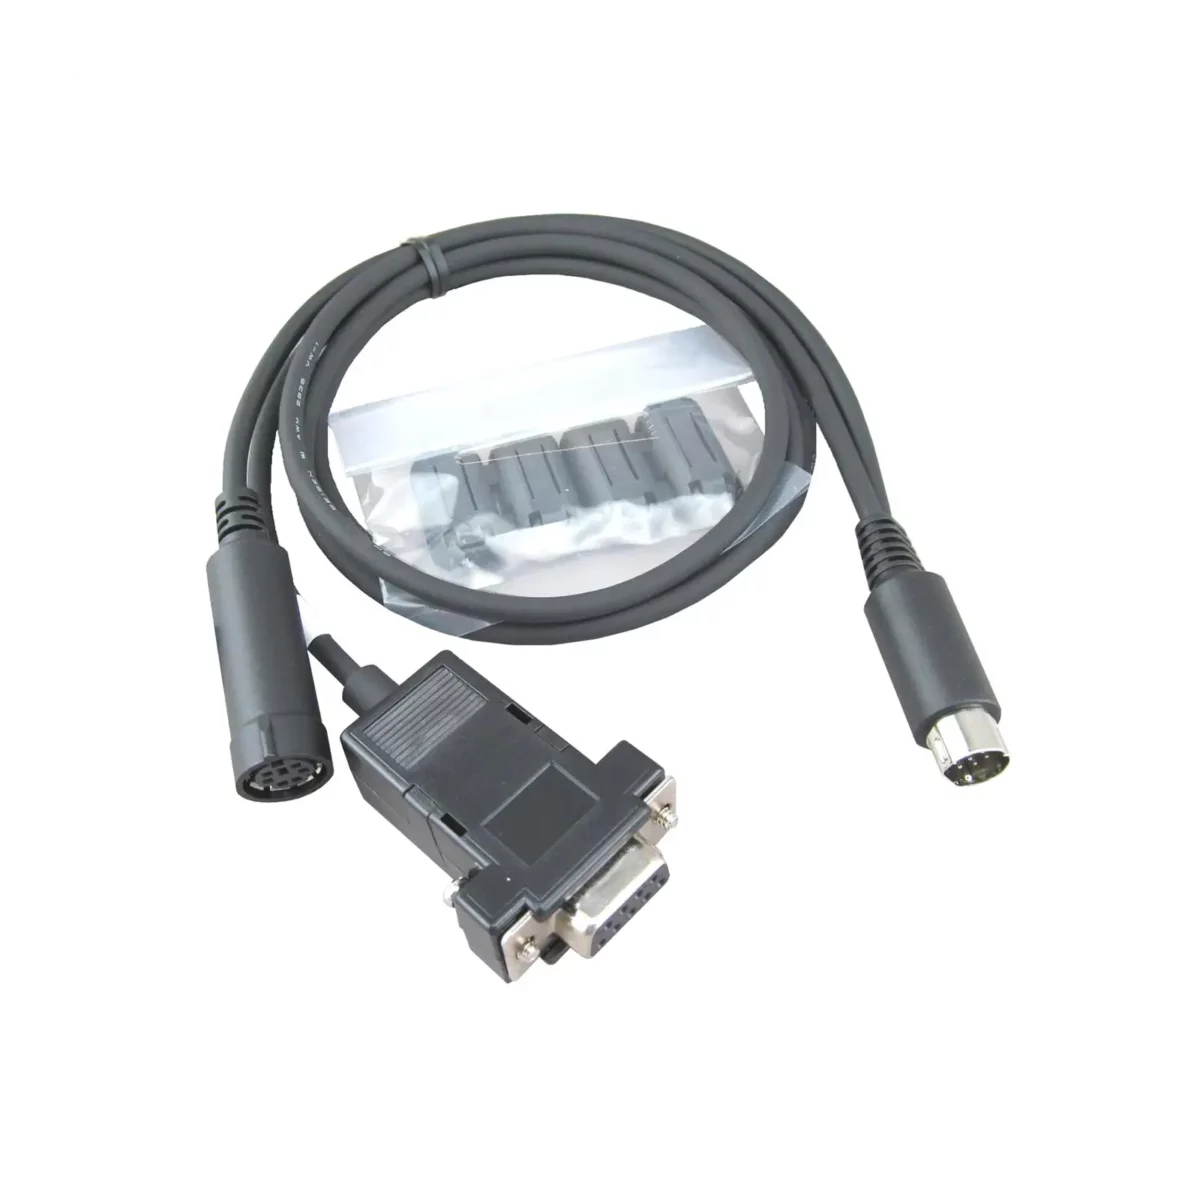 Yaesu CT-163 interface cable